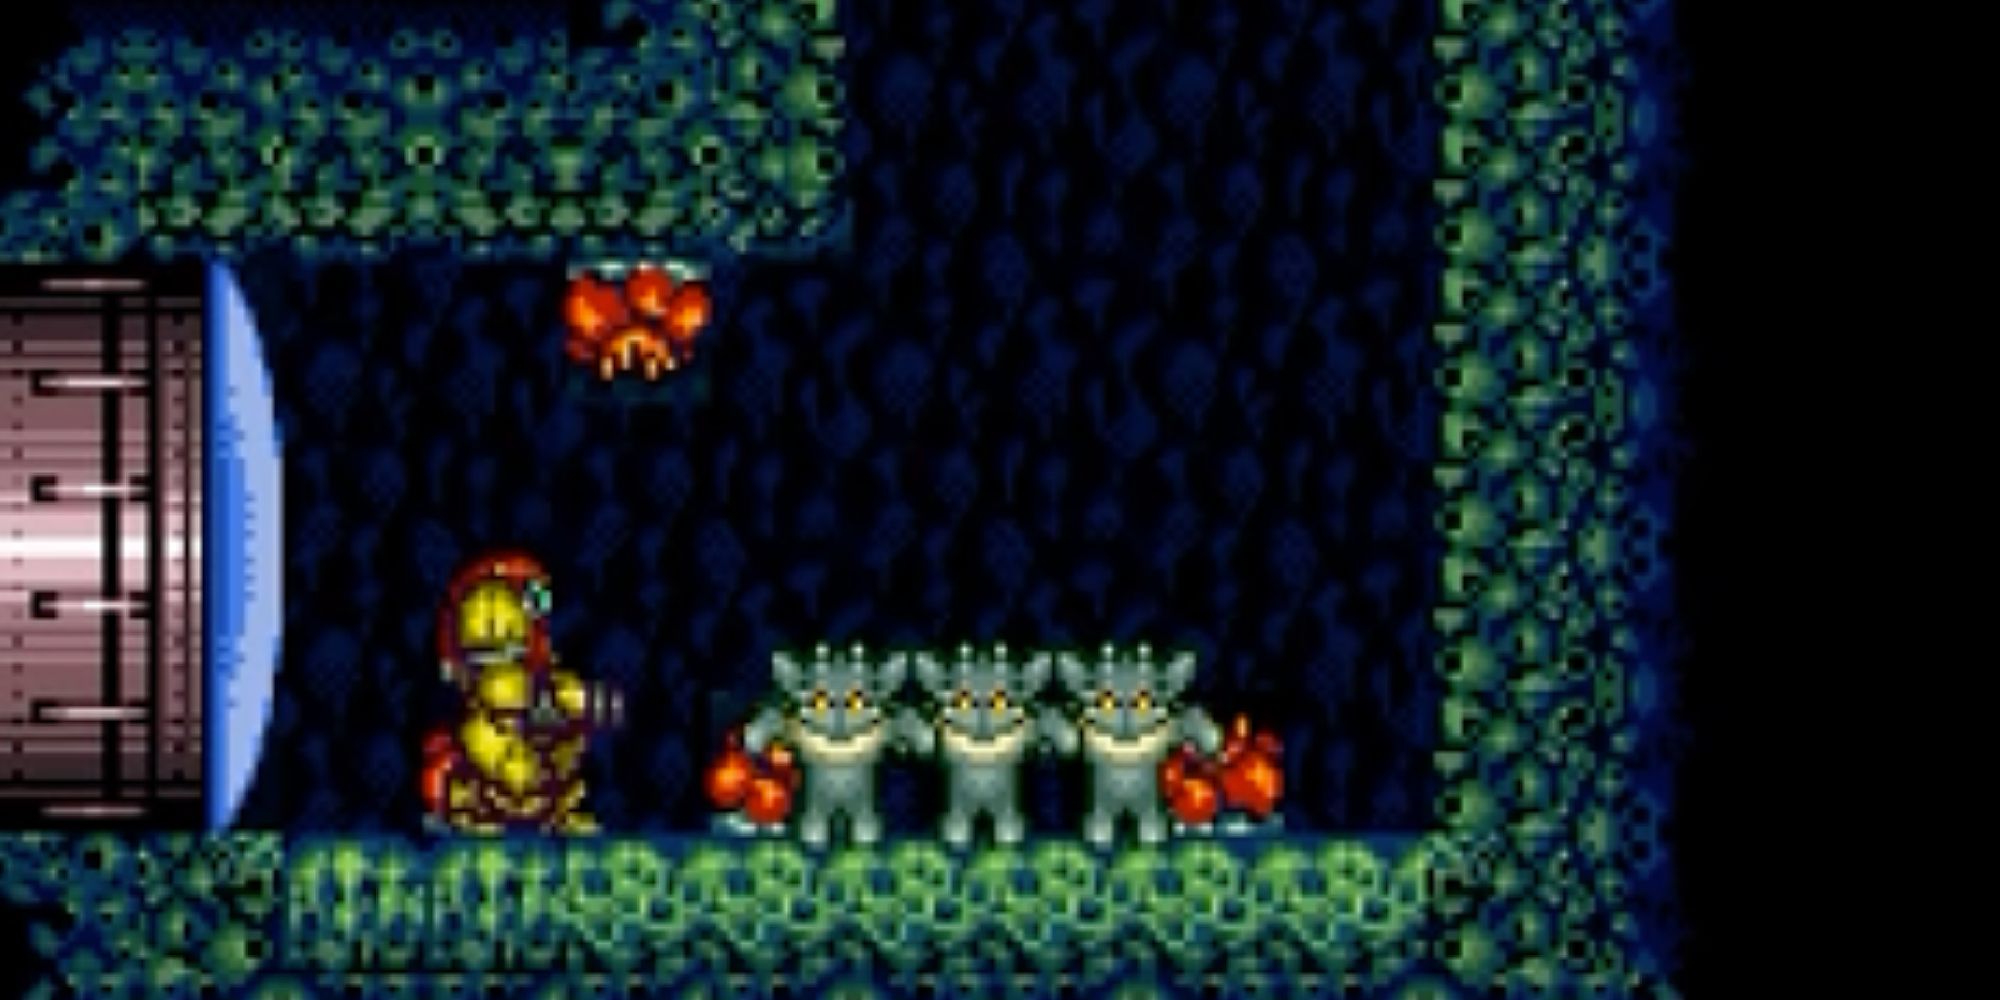 Samus enters a Super Metroid wall-jump room where three little creatures teach her how to wall-jump